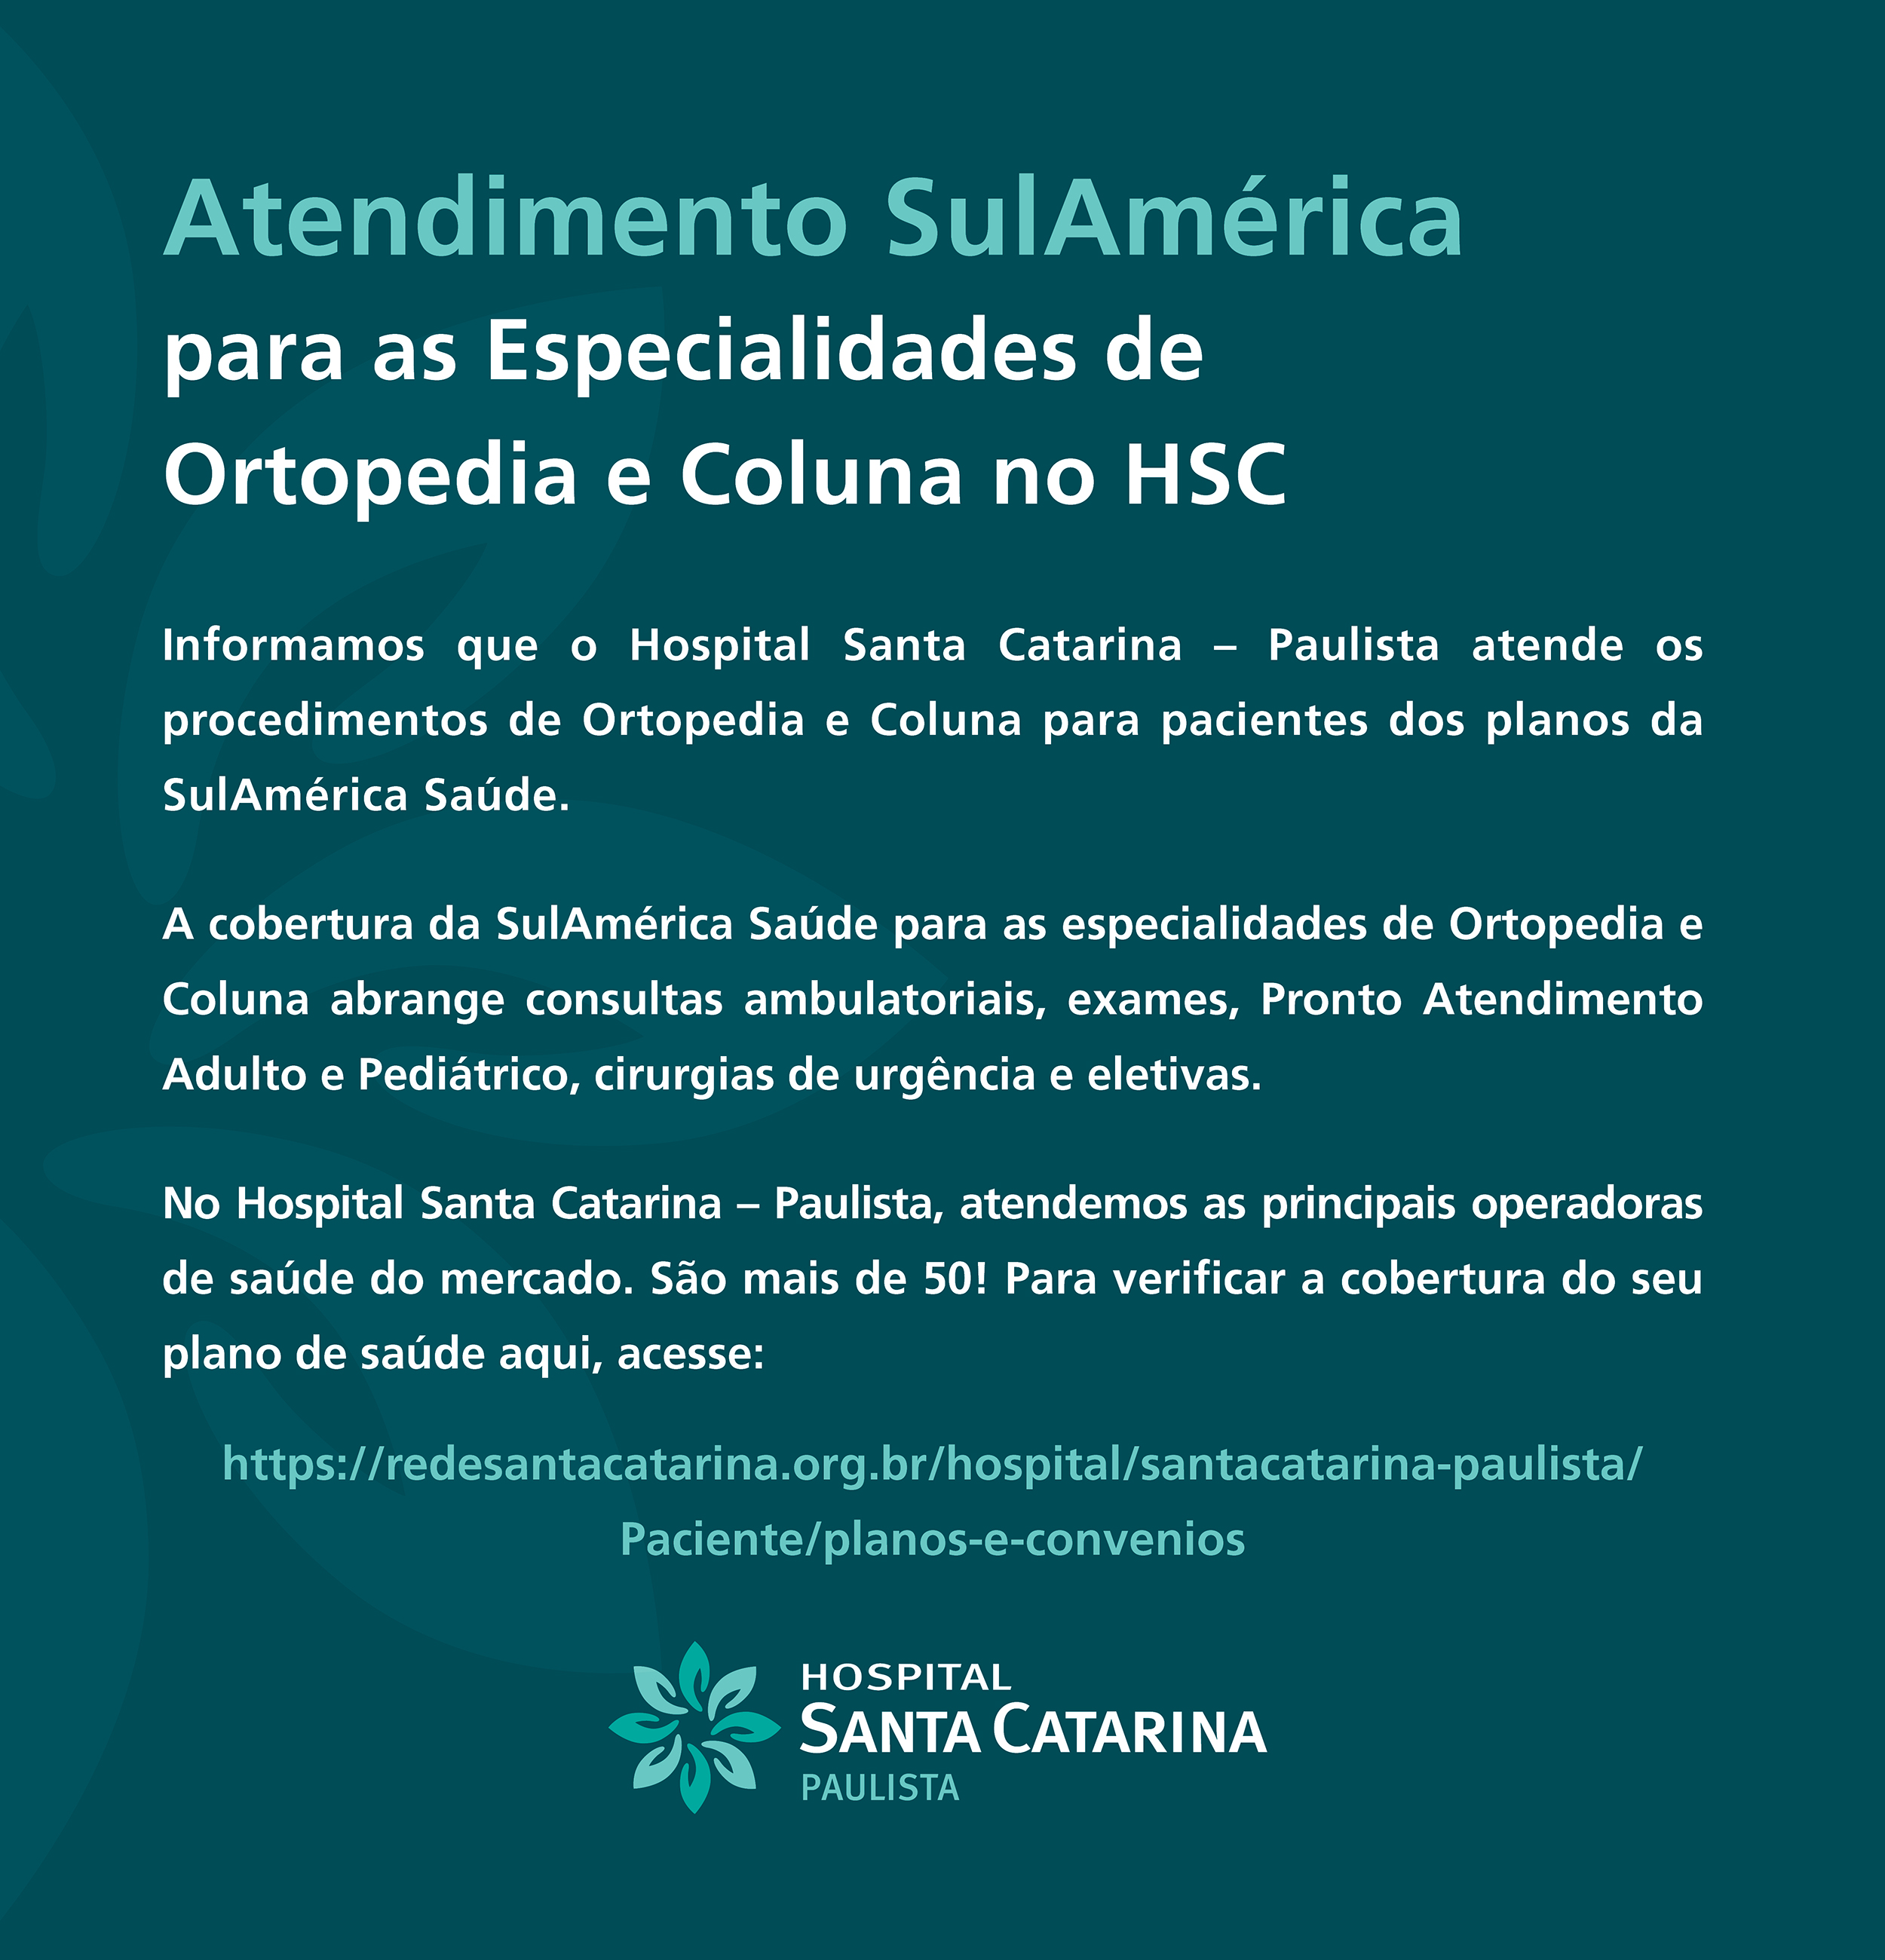 Hospital Santa Catarina - Paulista